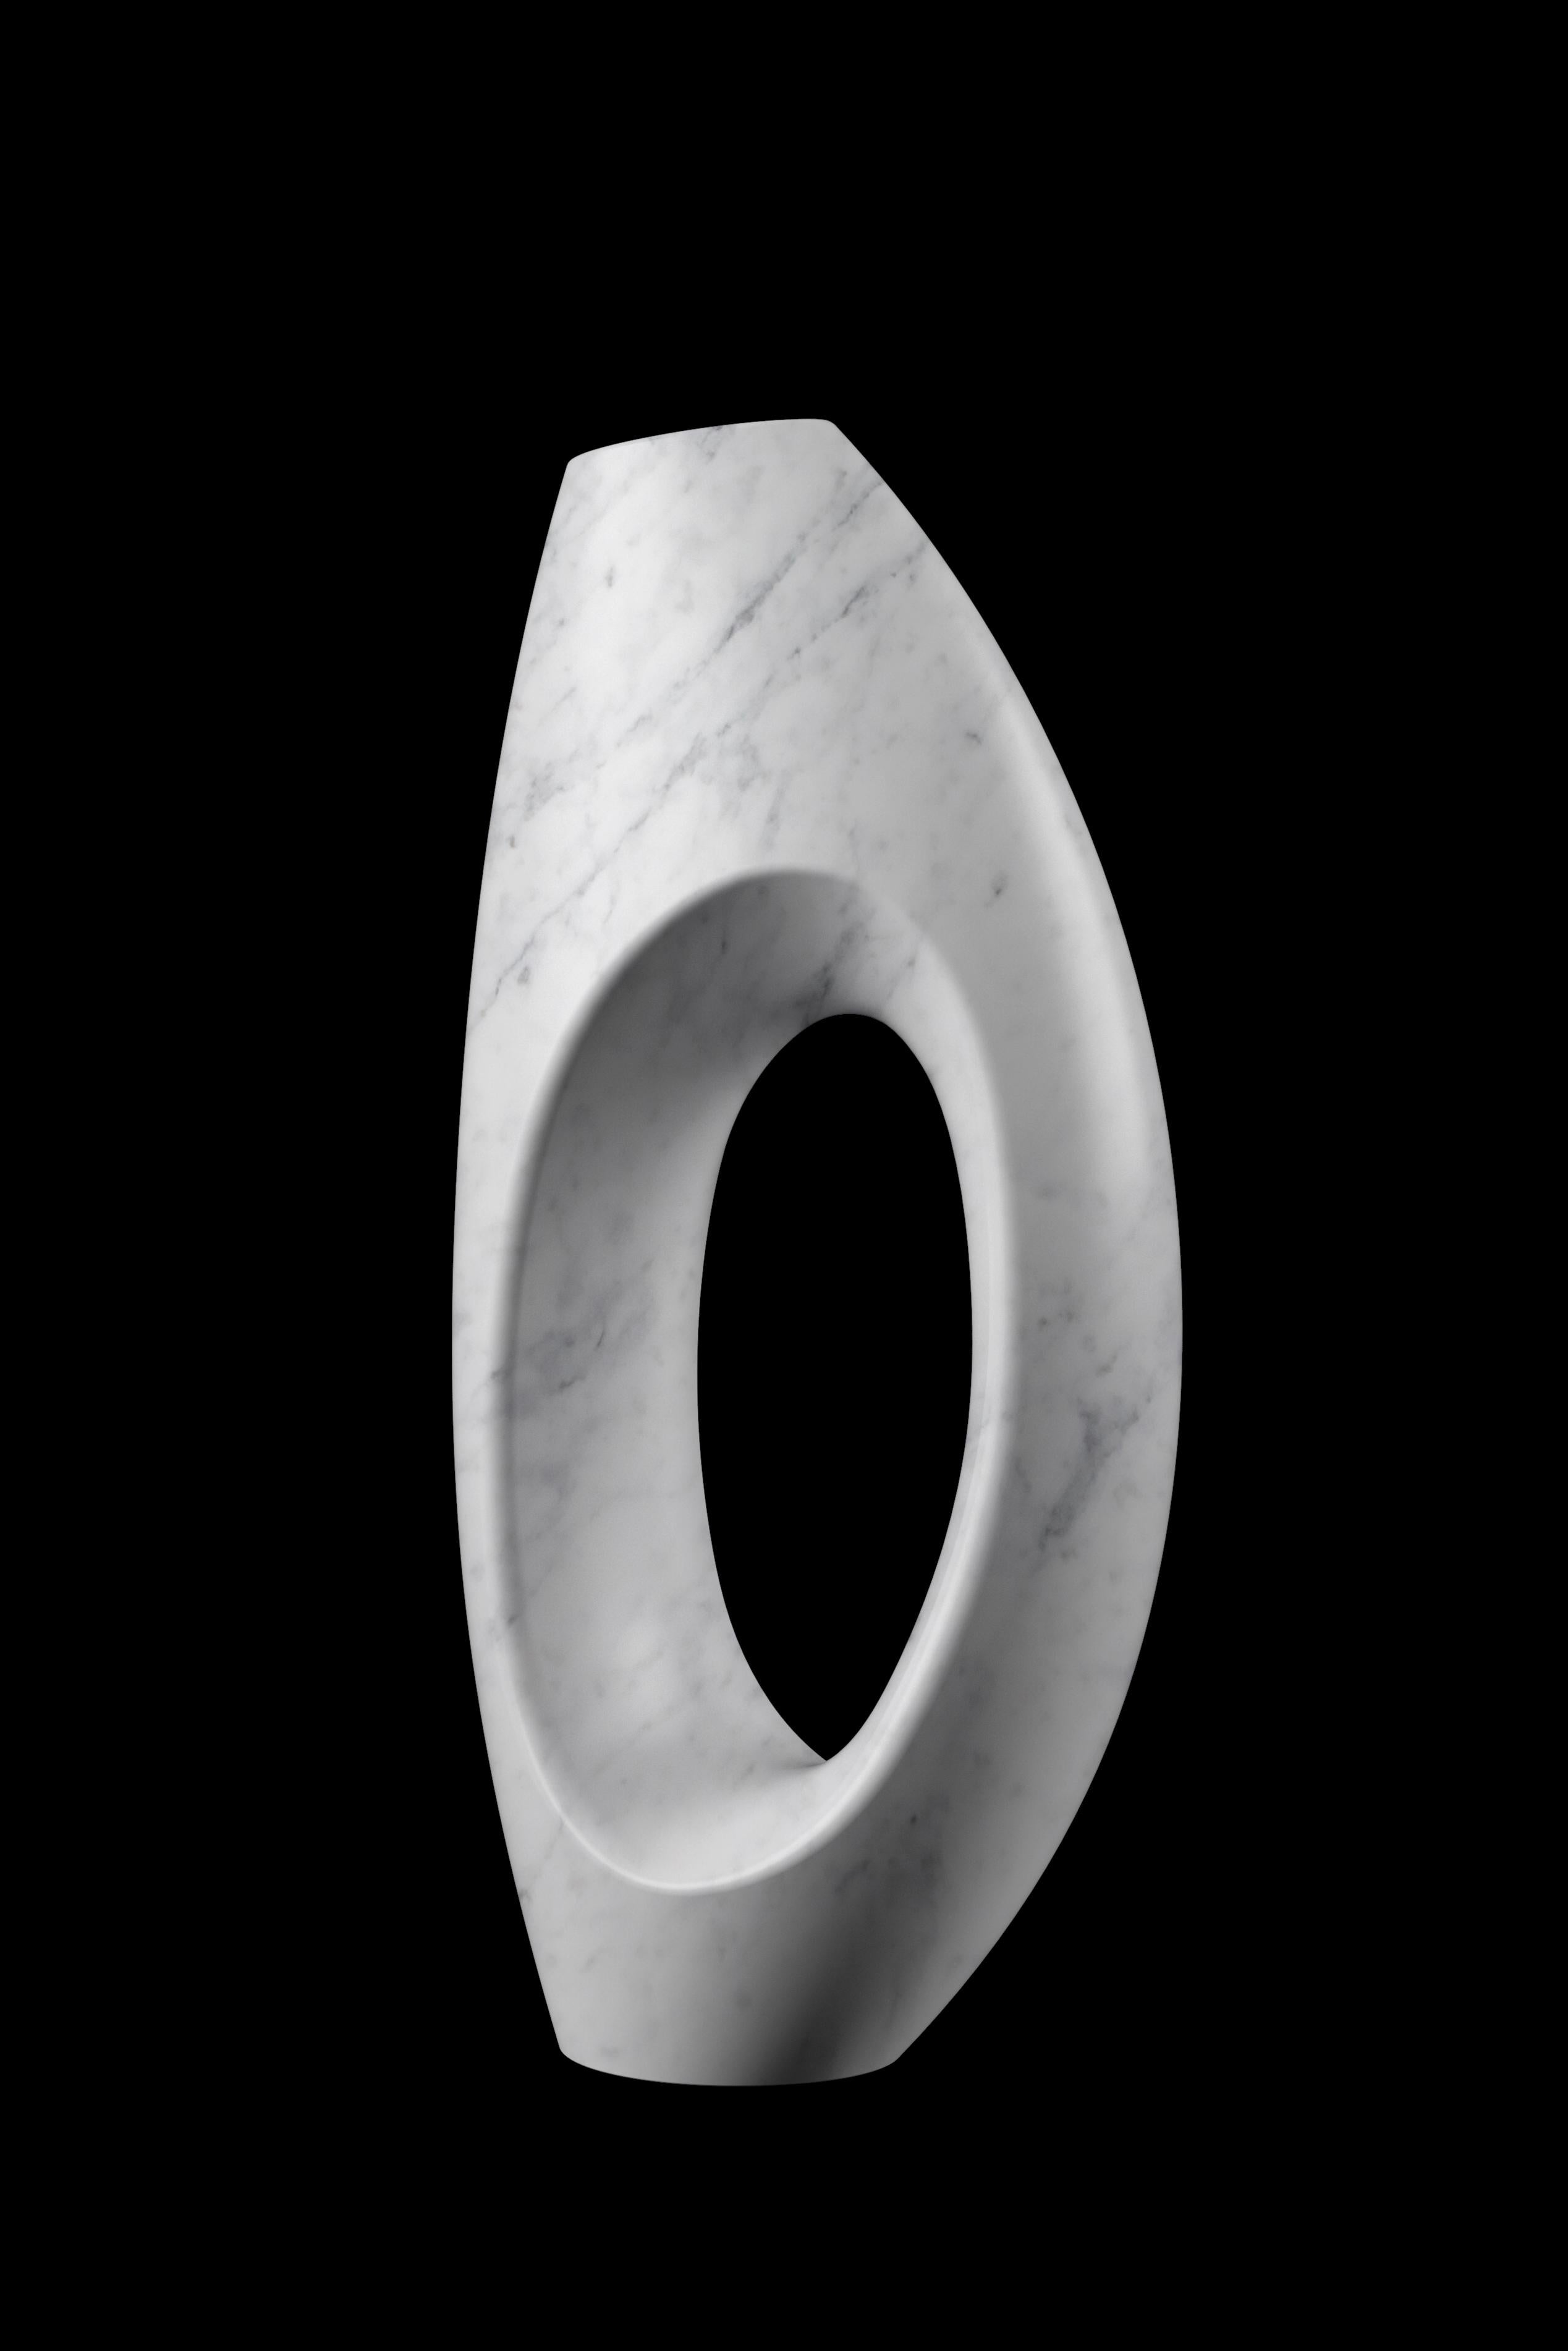 Skulpturale Vase, von Hand aus einem massiven Block aus weißem Carrara-Marmor gemeißelt, samtige Oberfläche. Diese Vase ist eine verkleinerte Version der ikonischen Skulptur PV02, die vom Atelier Barberini & Gunnell entworfen und in limitierter